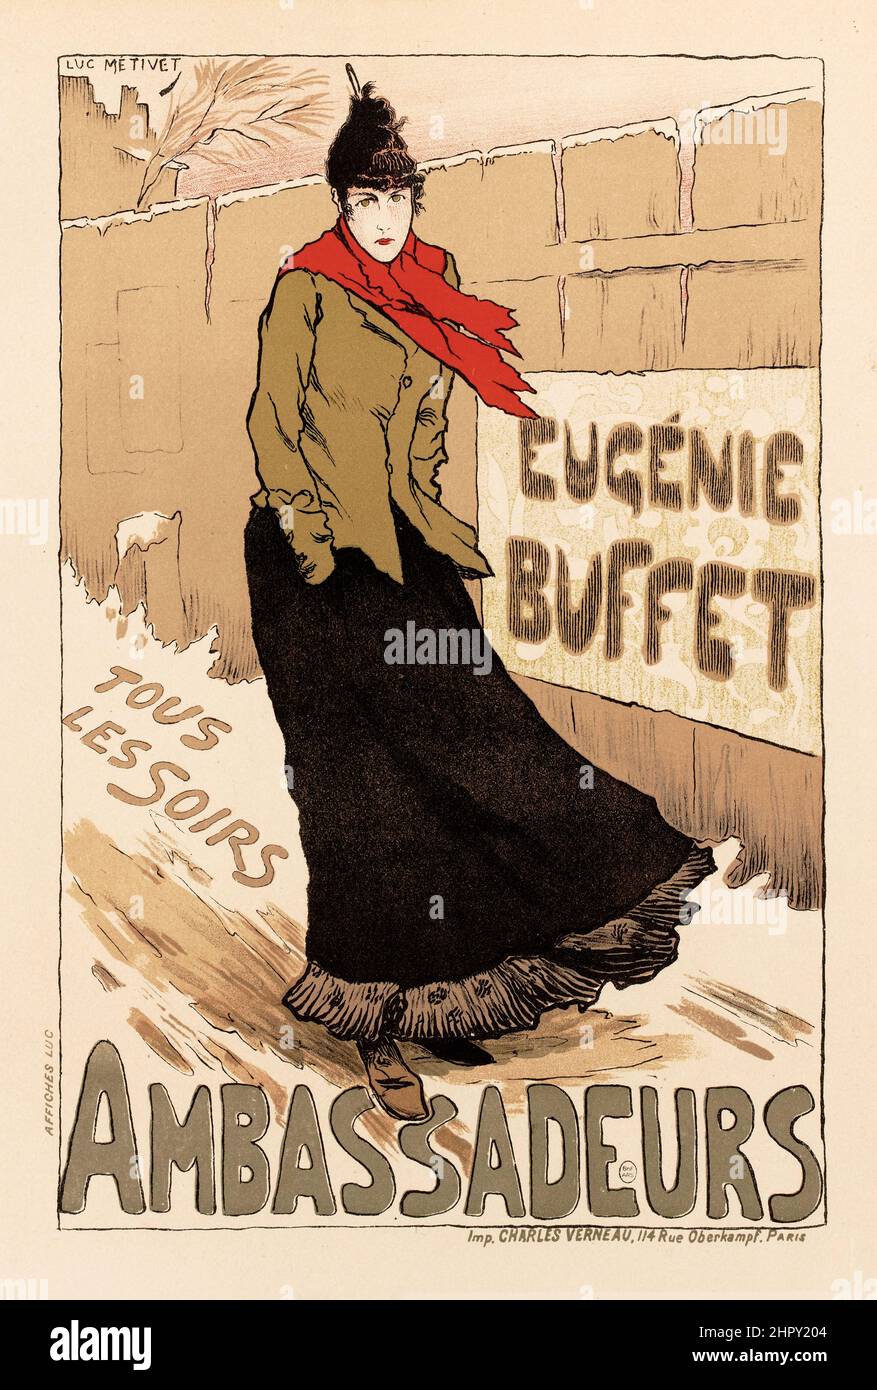 Maitres de l'affiche Vol 1 - Plate 22 - Lucien Metivet - Ambassadeurs. Eugenie Buffet. Tous Les Soirs. 1895. Stock Photo